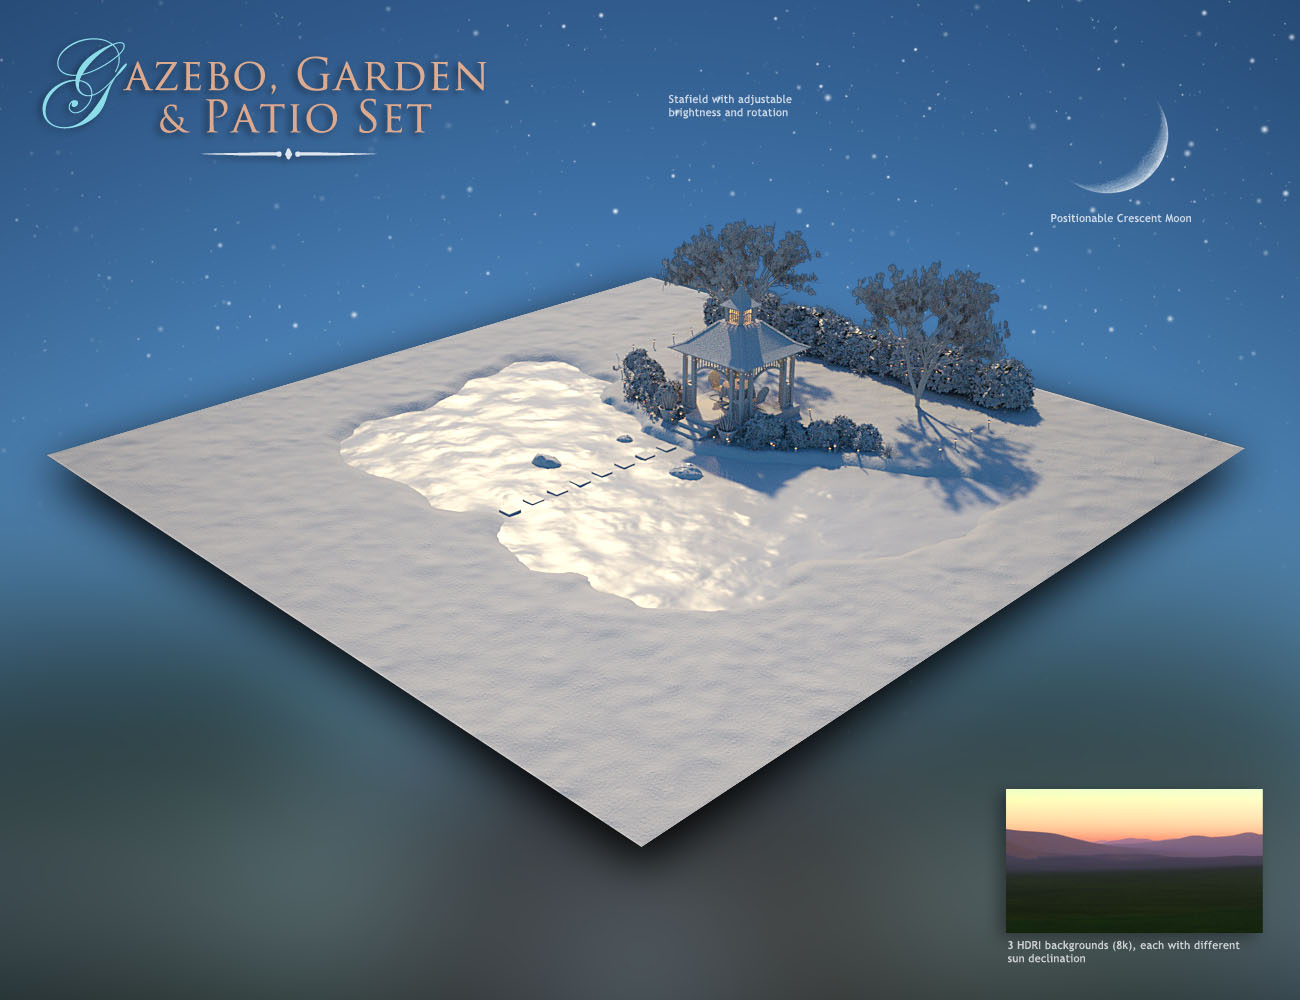 Gazebo, Garden and Patio Set by: bitwelder, 3D Models by Daz 3D